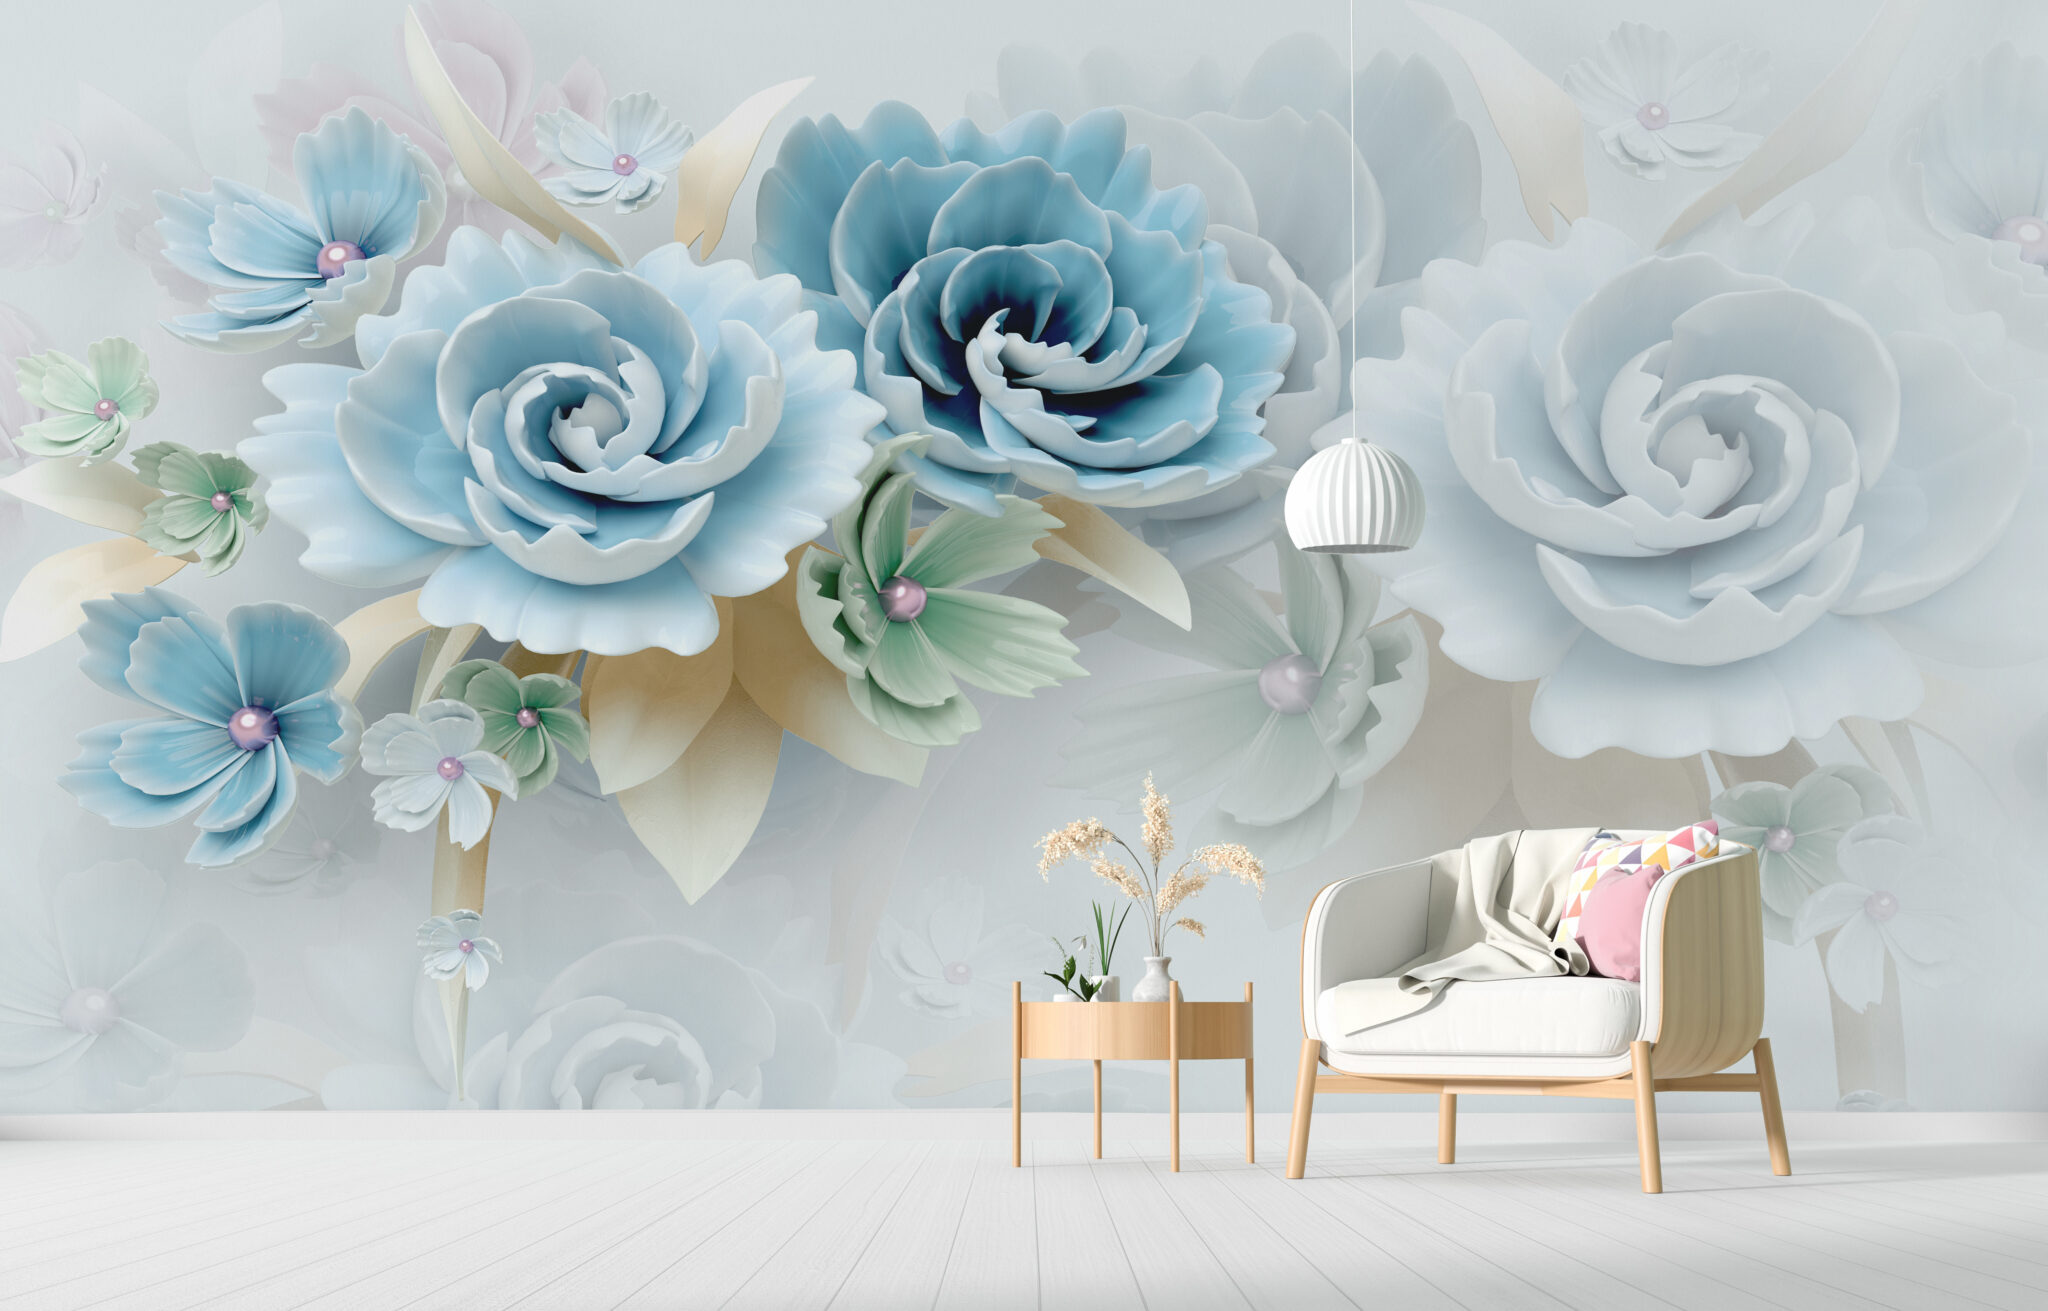 Thật tuyệt vời khi sử dụng giấy dán tường hoa để trang trí cho căn phòng của bạn. Với những hoa văn tinh tế và độc đáo, giấy dán tường hoa sẽ mang lại cho không gian sống của bạn một vẻ đẹp sang trọng và quyến rũ. Hãy cùng chiêm ngưỡng những hình ảnh về giấy dán hoa tuyệt đẹp này.